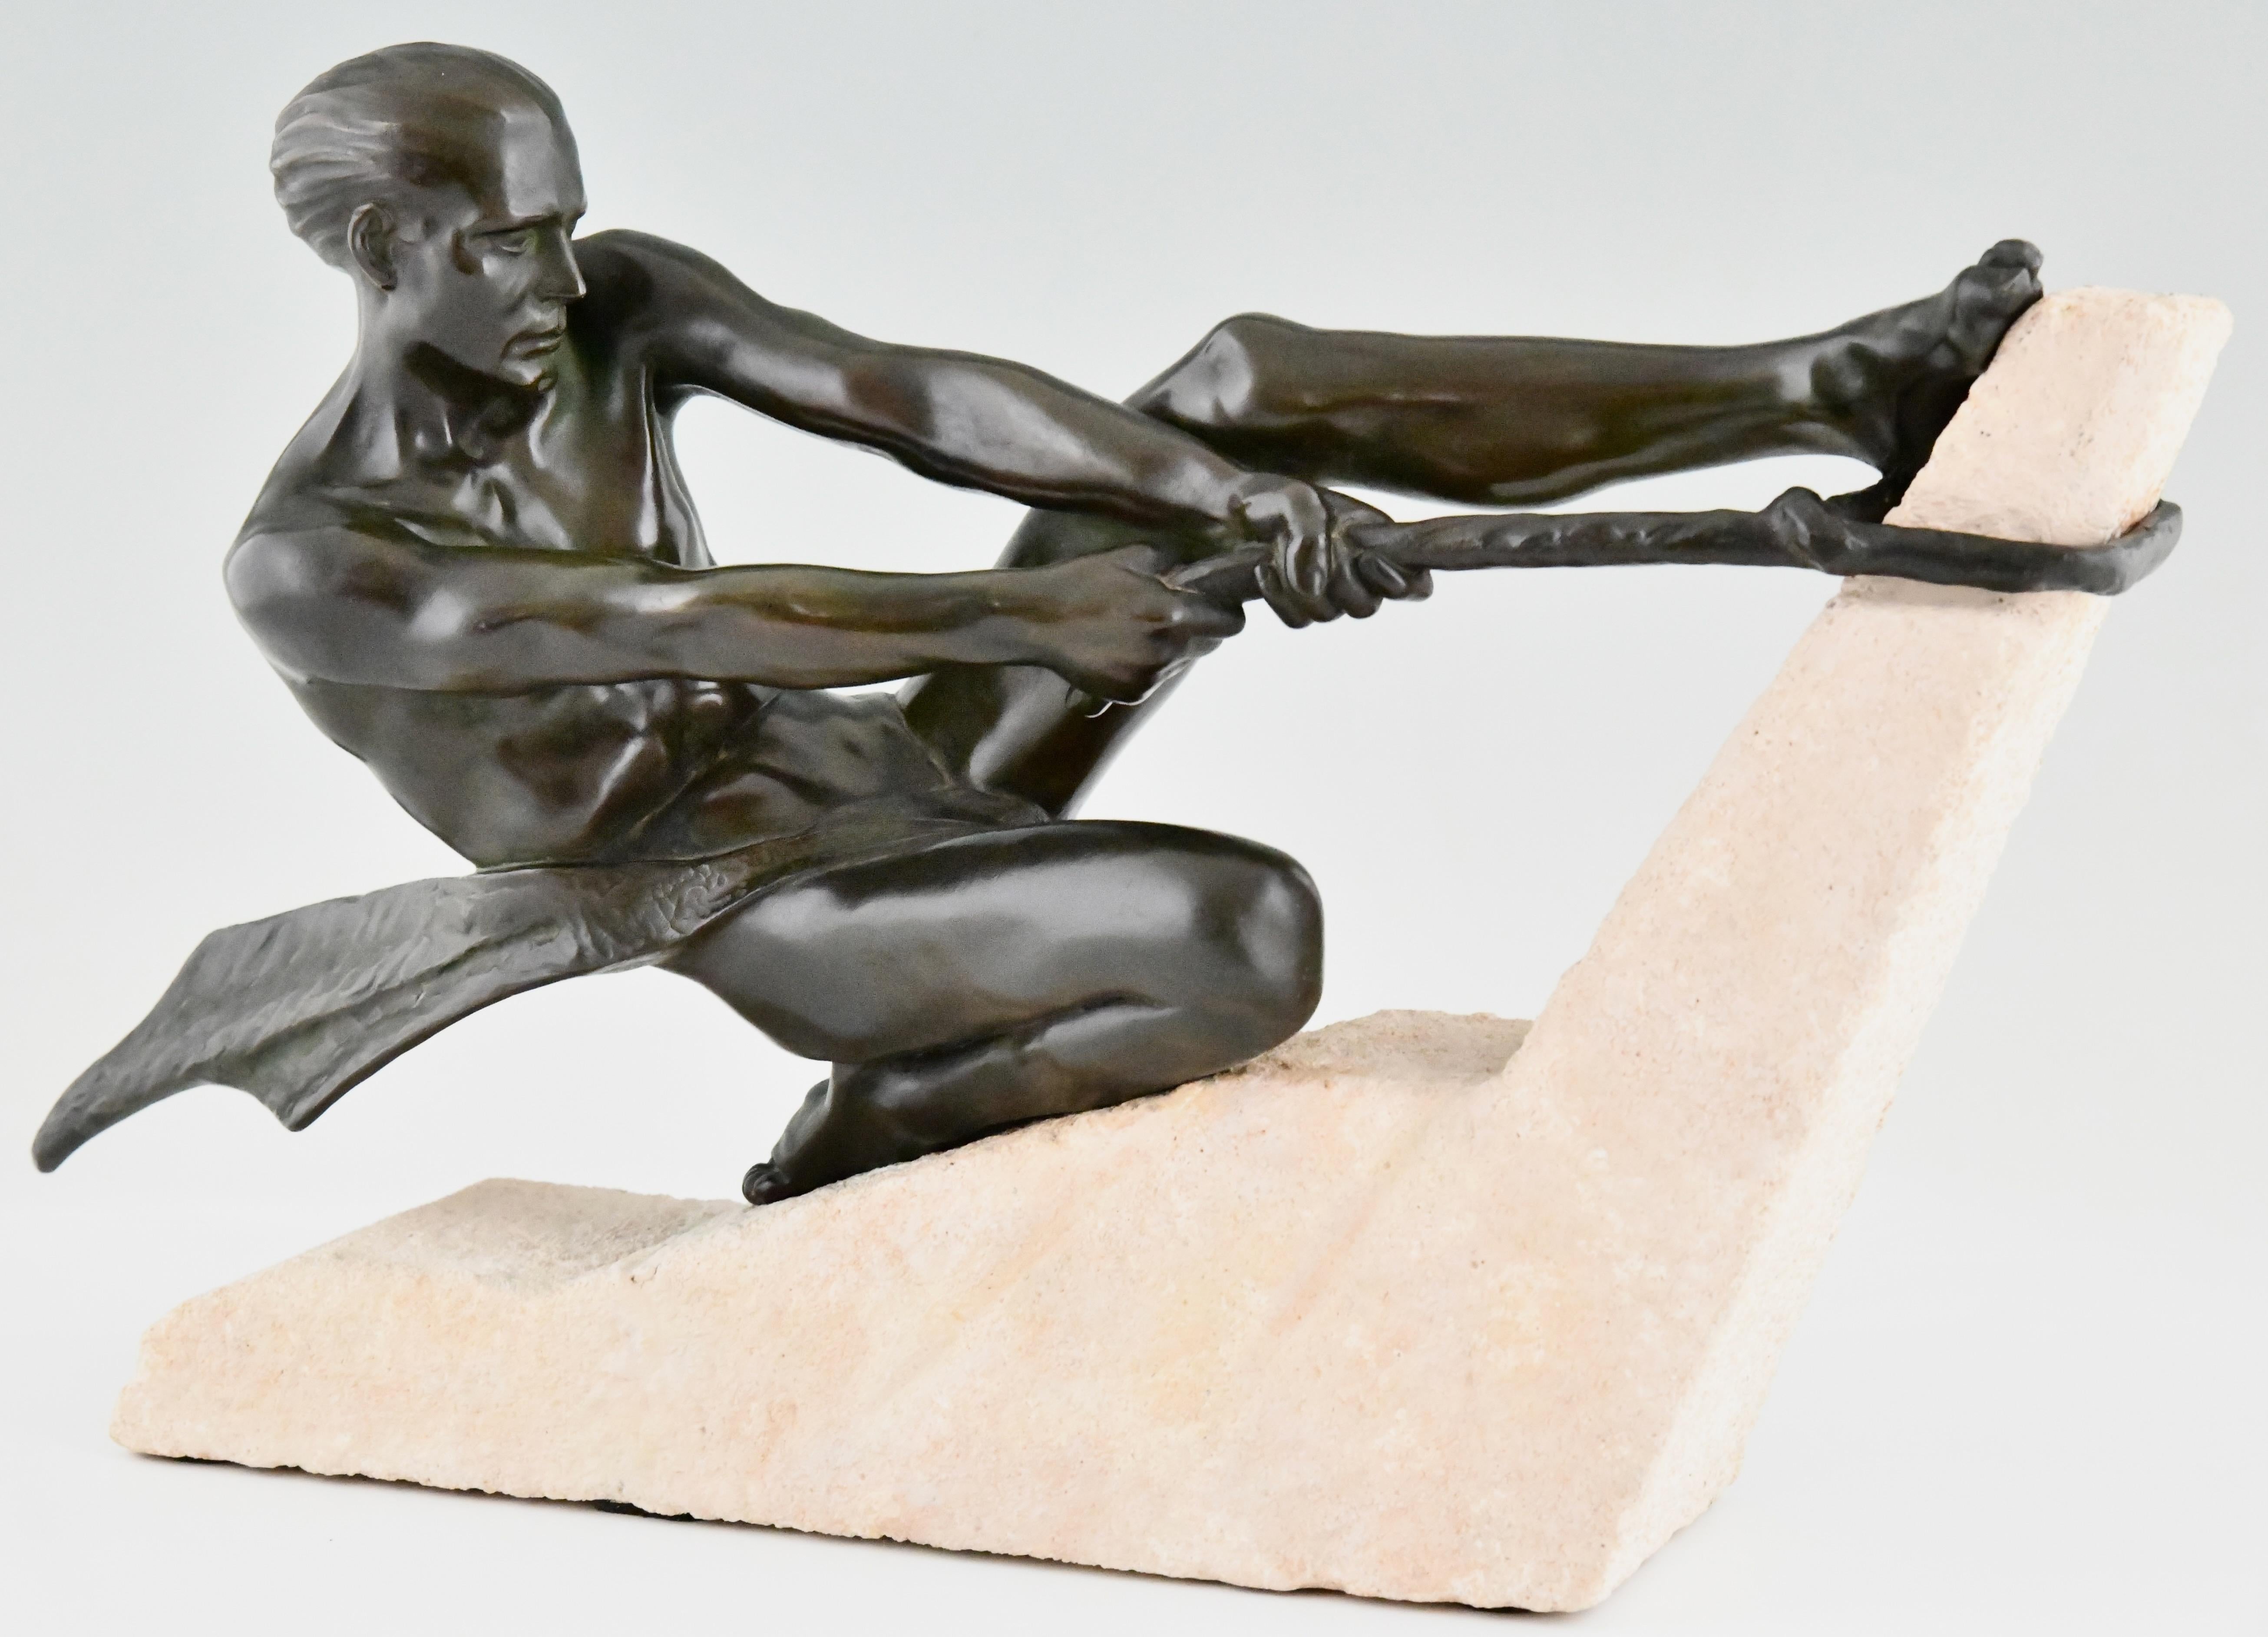 Sculpture Art Déco athlète avec corde par Max Le Verrier. 
La sculpture est exécutée en métal d'art avec une patine verte et repose sur une base en pierre sculptée.
France 1937. 
Un modèle similaire est illustré dans le catalogue Max Le Verrier de